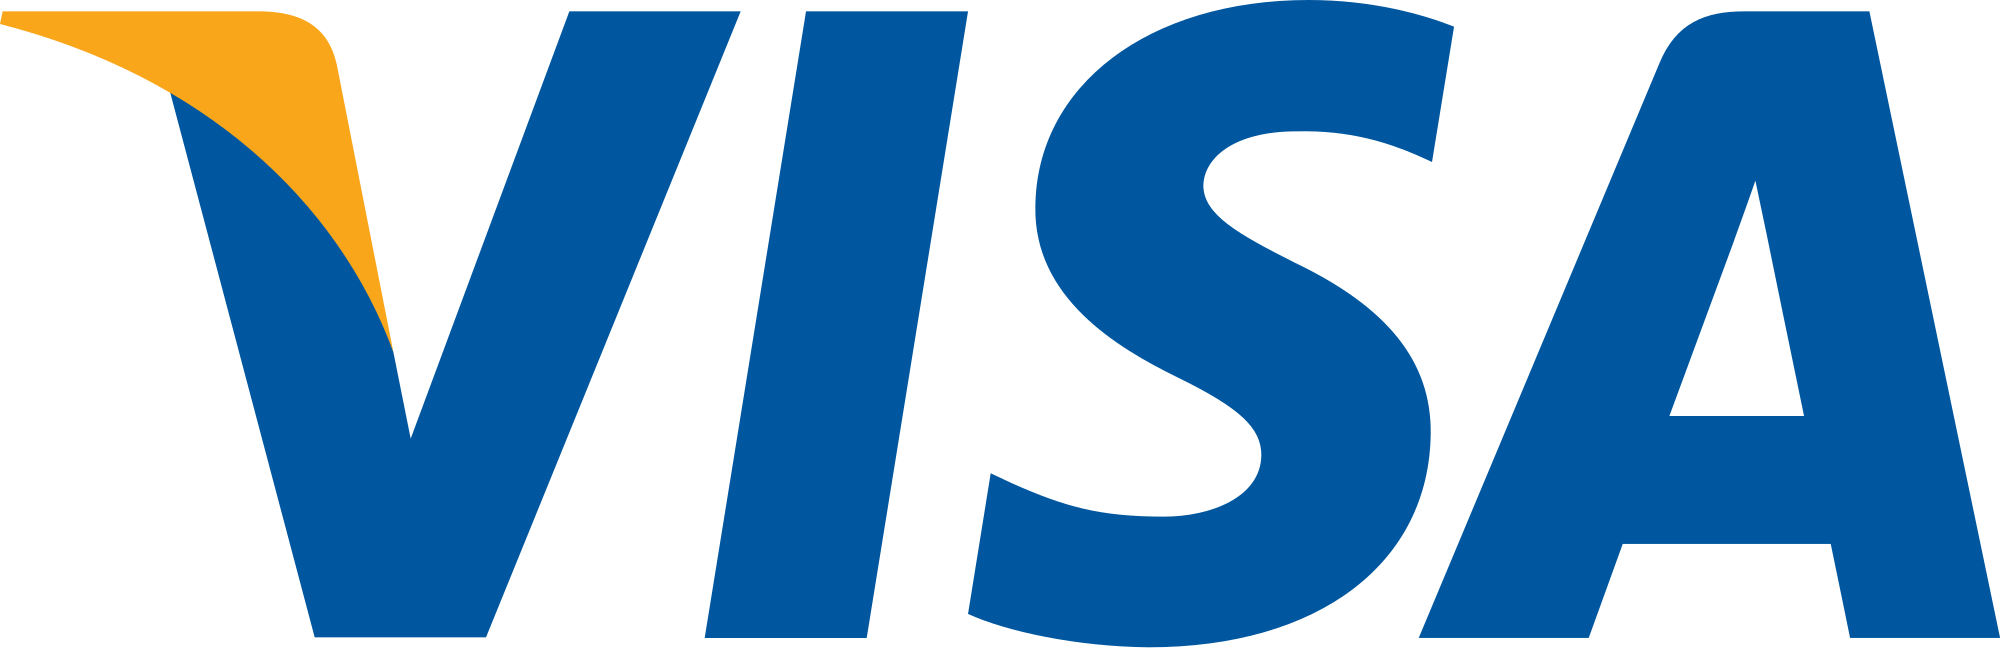 The Visa Card logo.